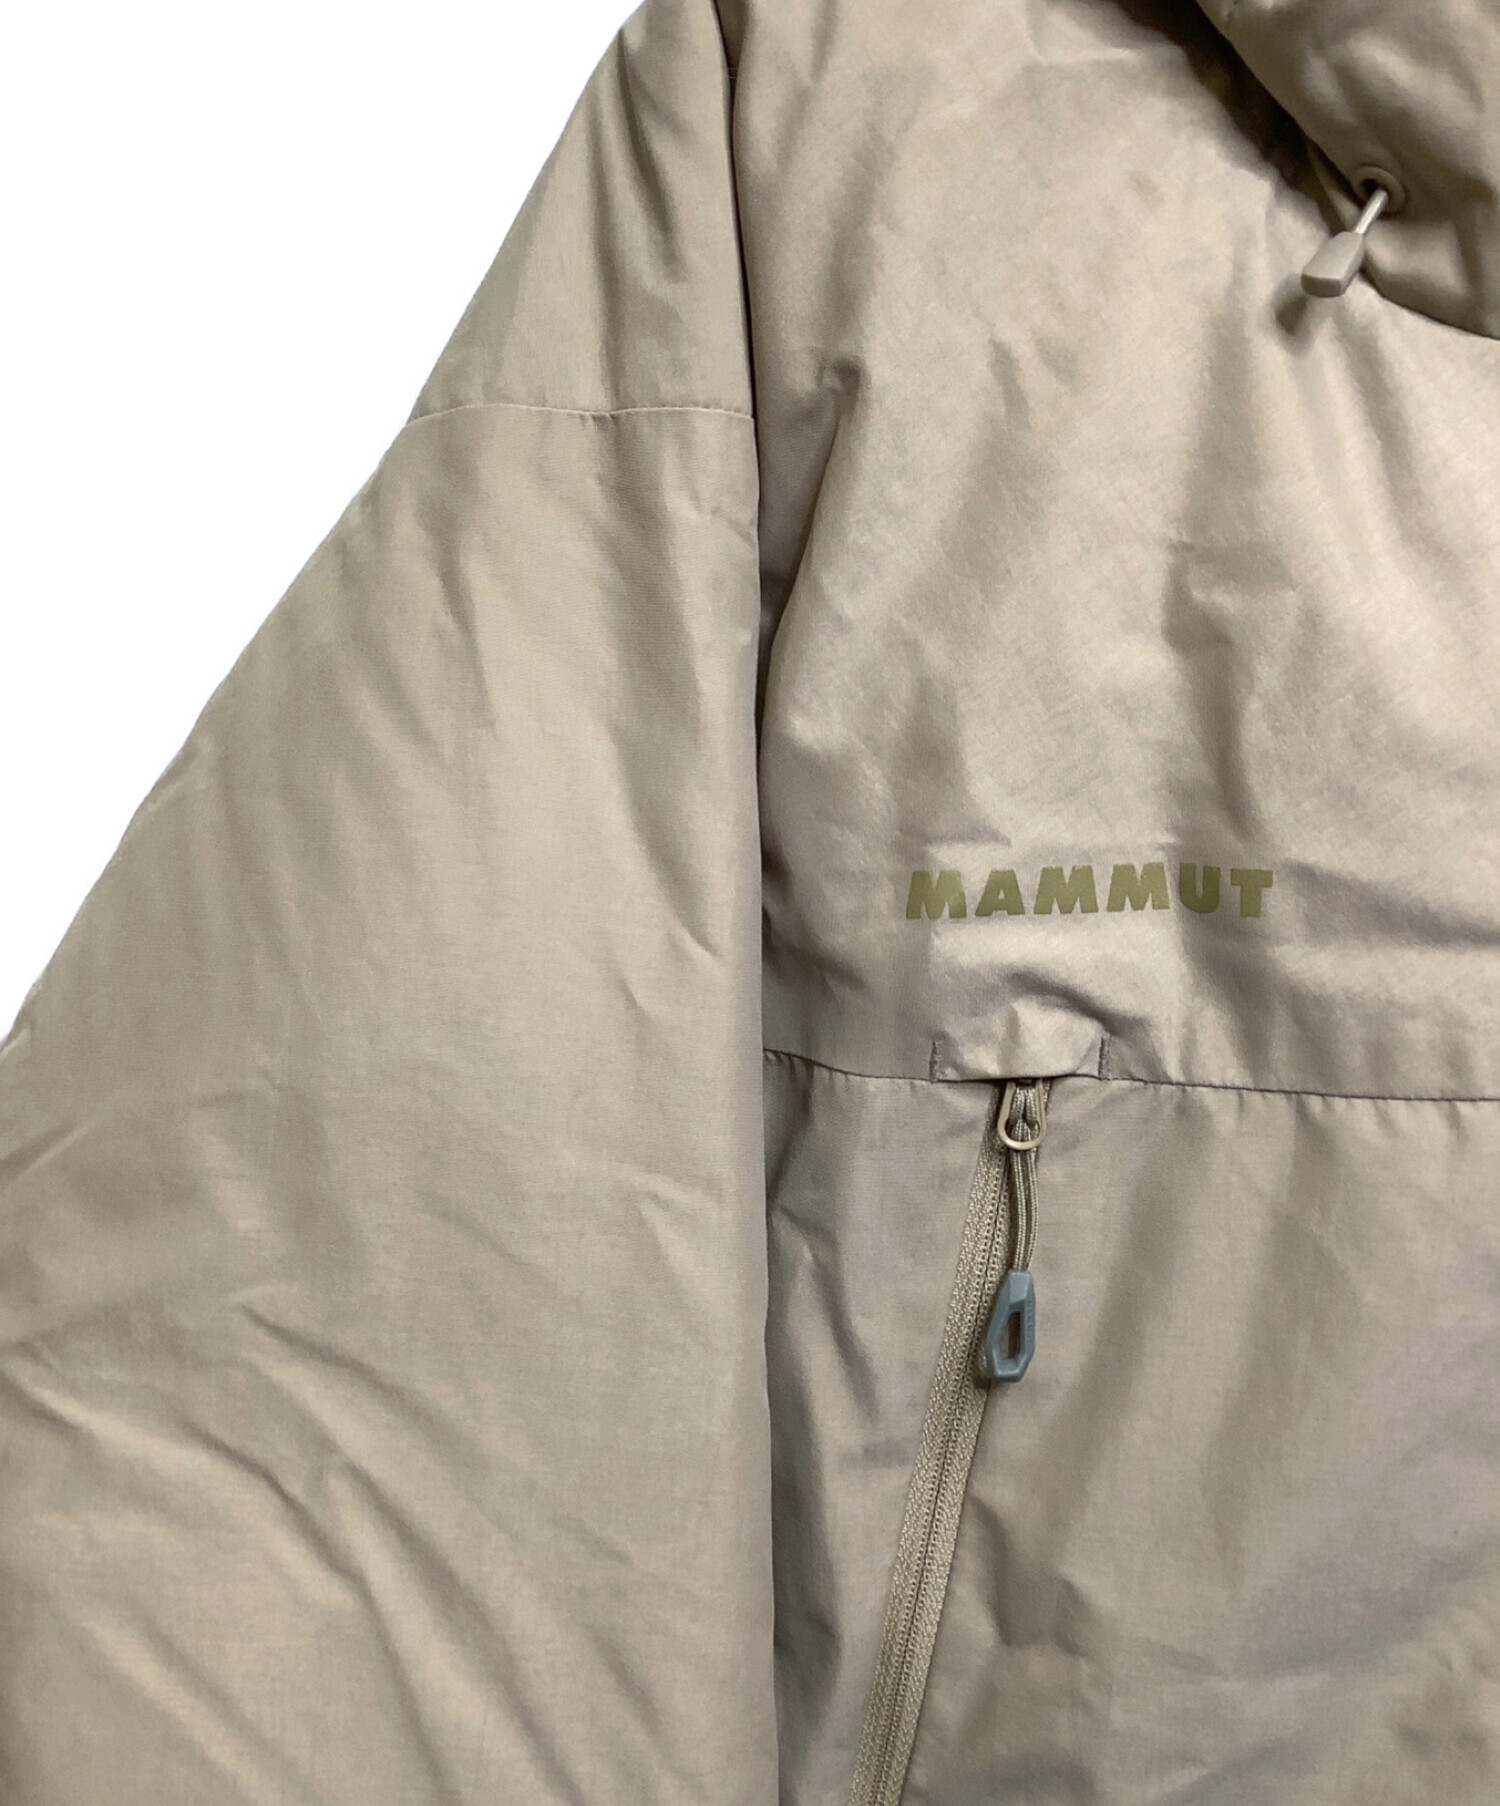 MAMMUT (マムート) ダウンジャケット ベージュ サイズ:XL